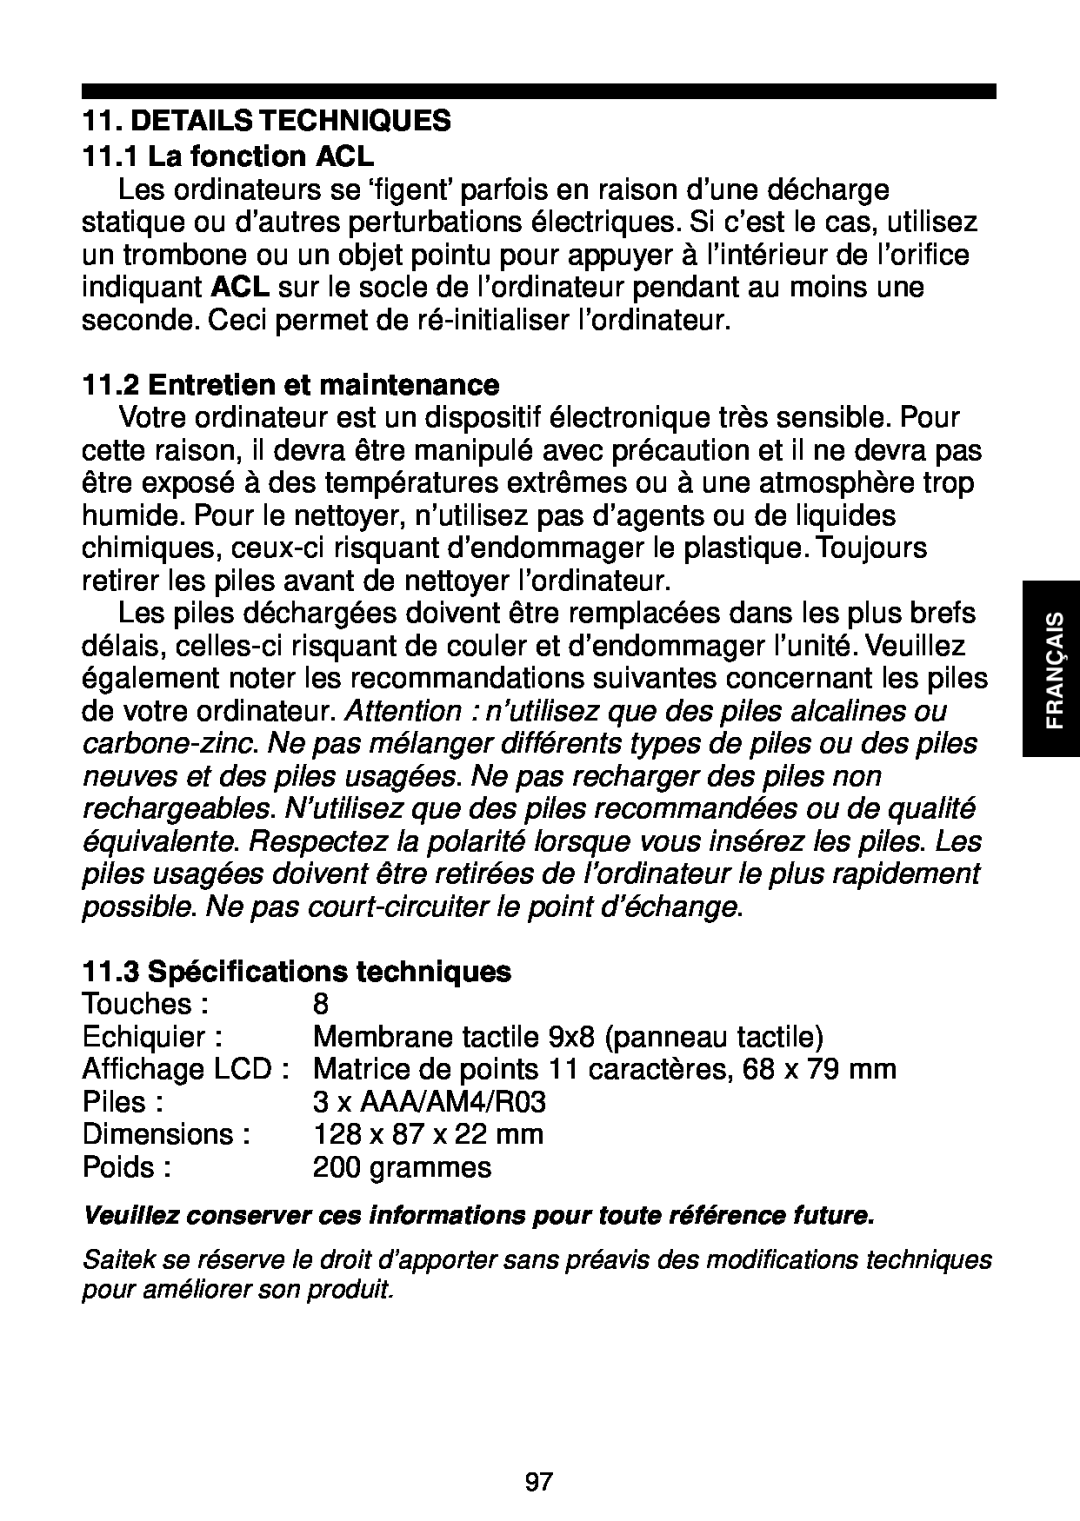 Saitek Maestro Travel Chess Computer manual DETAILS TECHNIQUES 11.1 La fonction ACL, Entretien et maintenance 